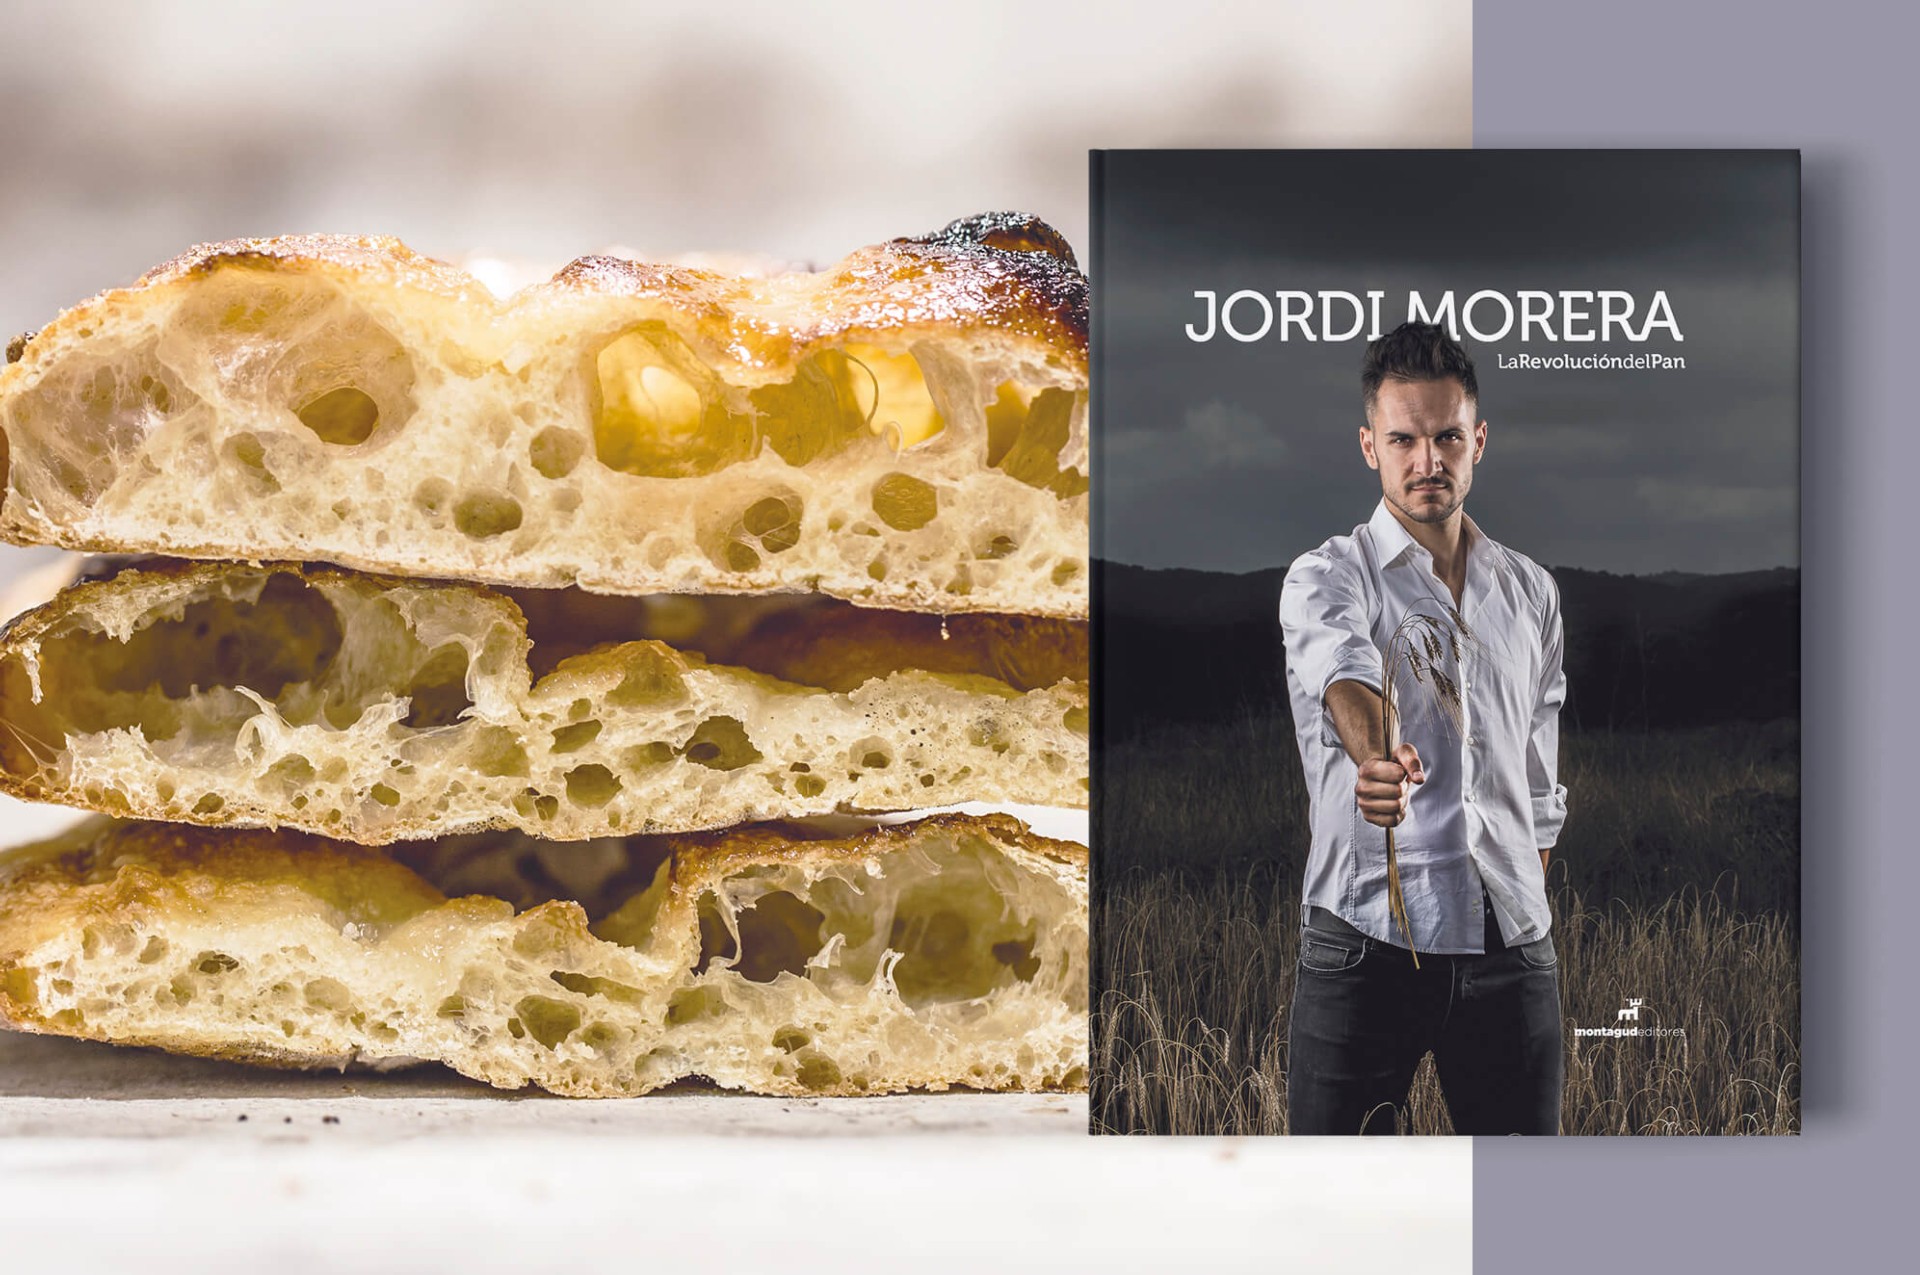 La revolución del pan, Jordi Morera